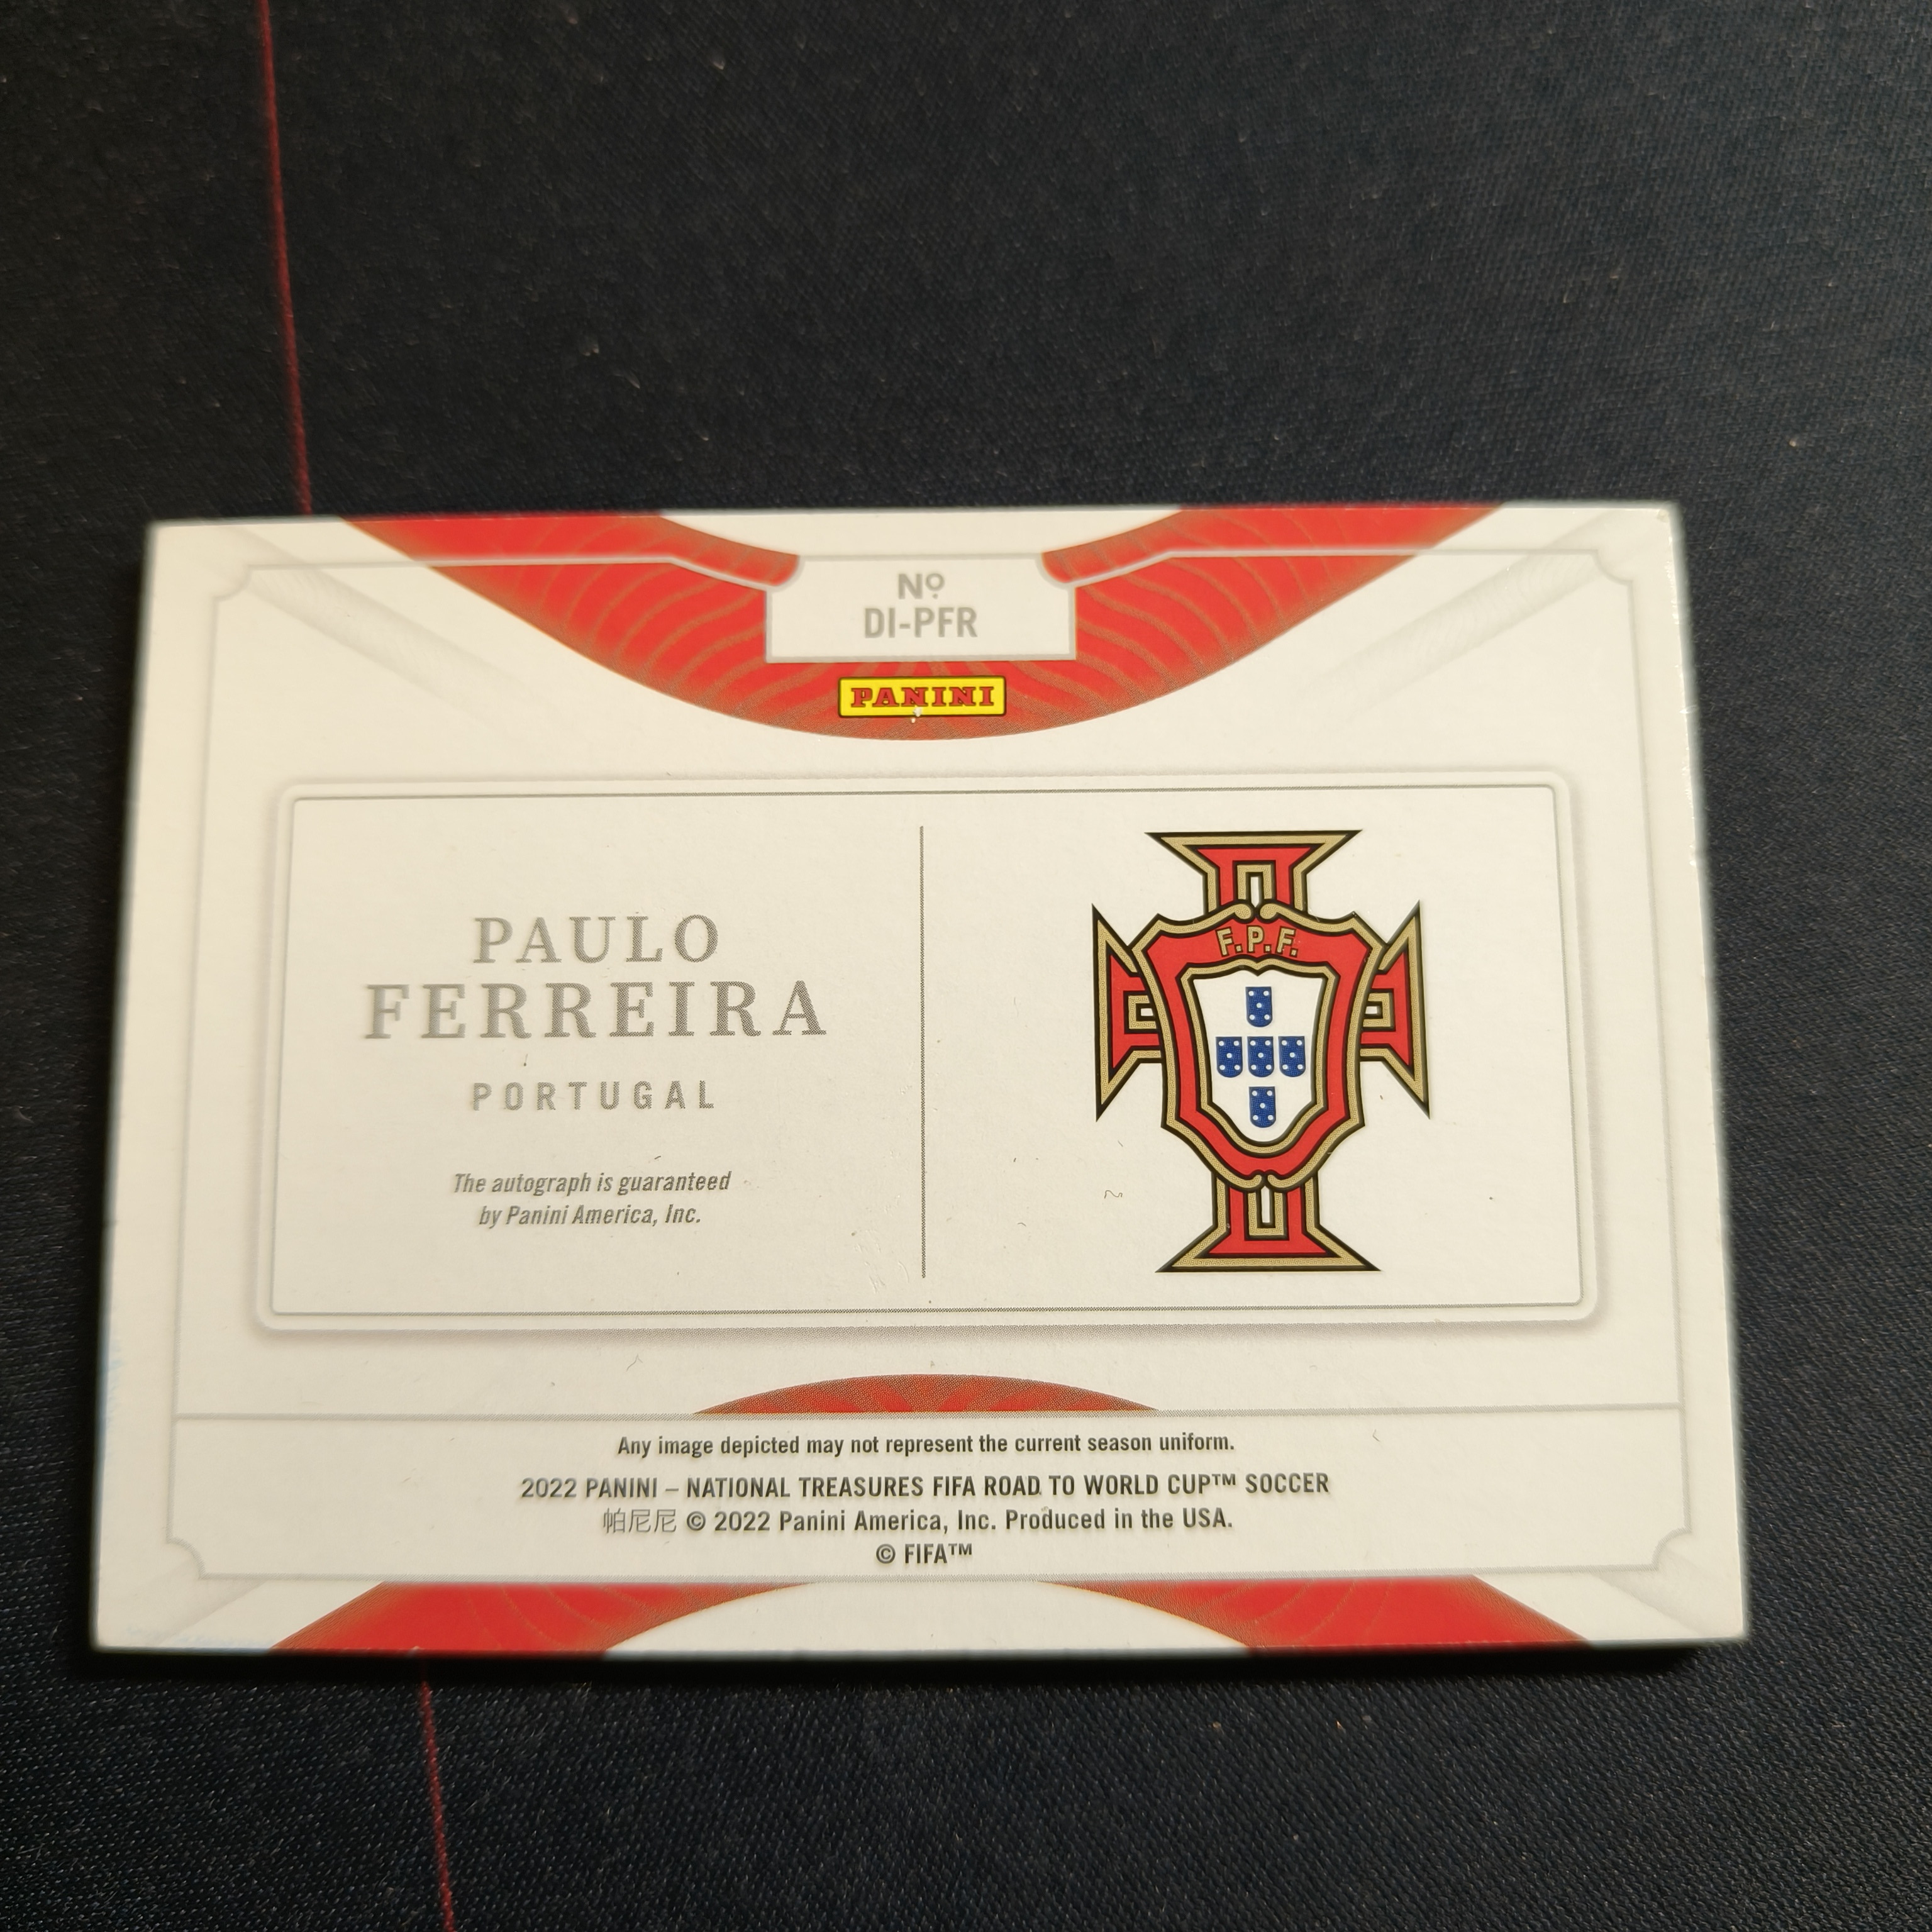 【飞哥拍卖】帕尼尼 世界杯国宝 葡萄牙 Paulo Ferreira 保罗 费雷拉 99编 卡签 签字卡 签名卡 轻微划痕小印 只发顺丰寄付特快看描述 WZH